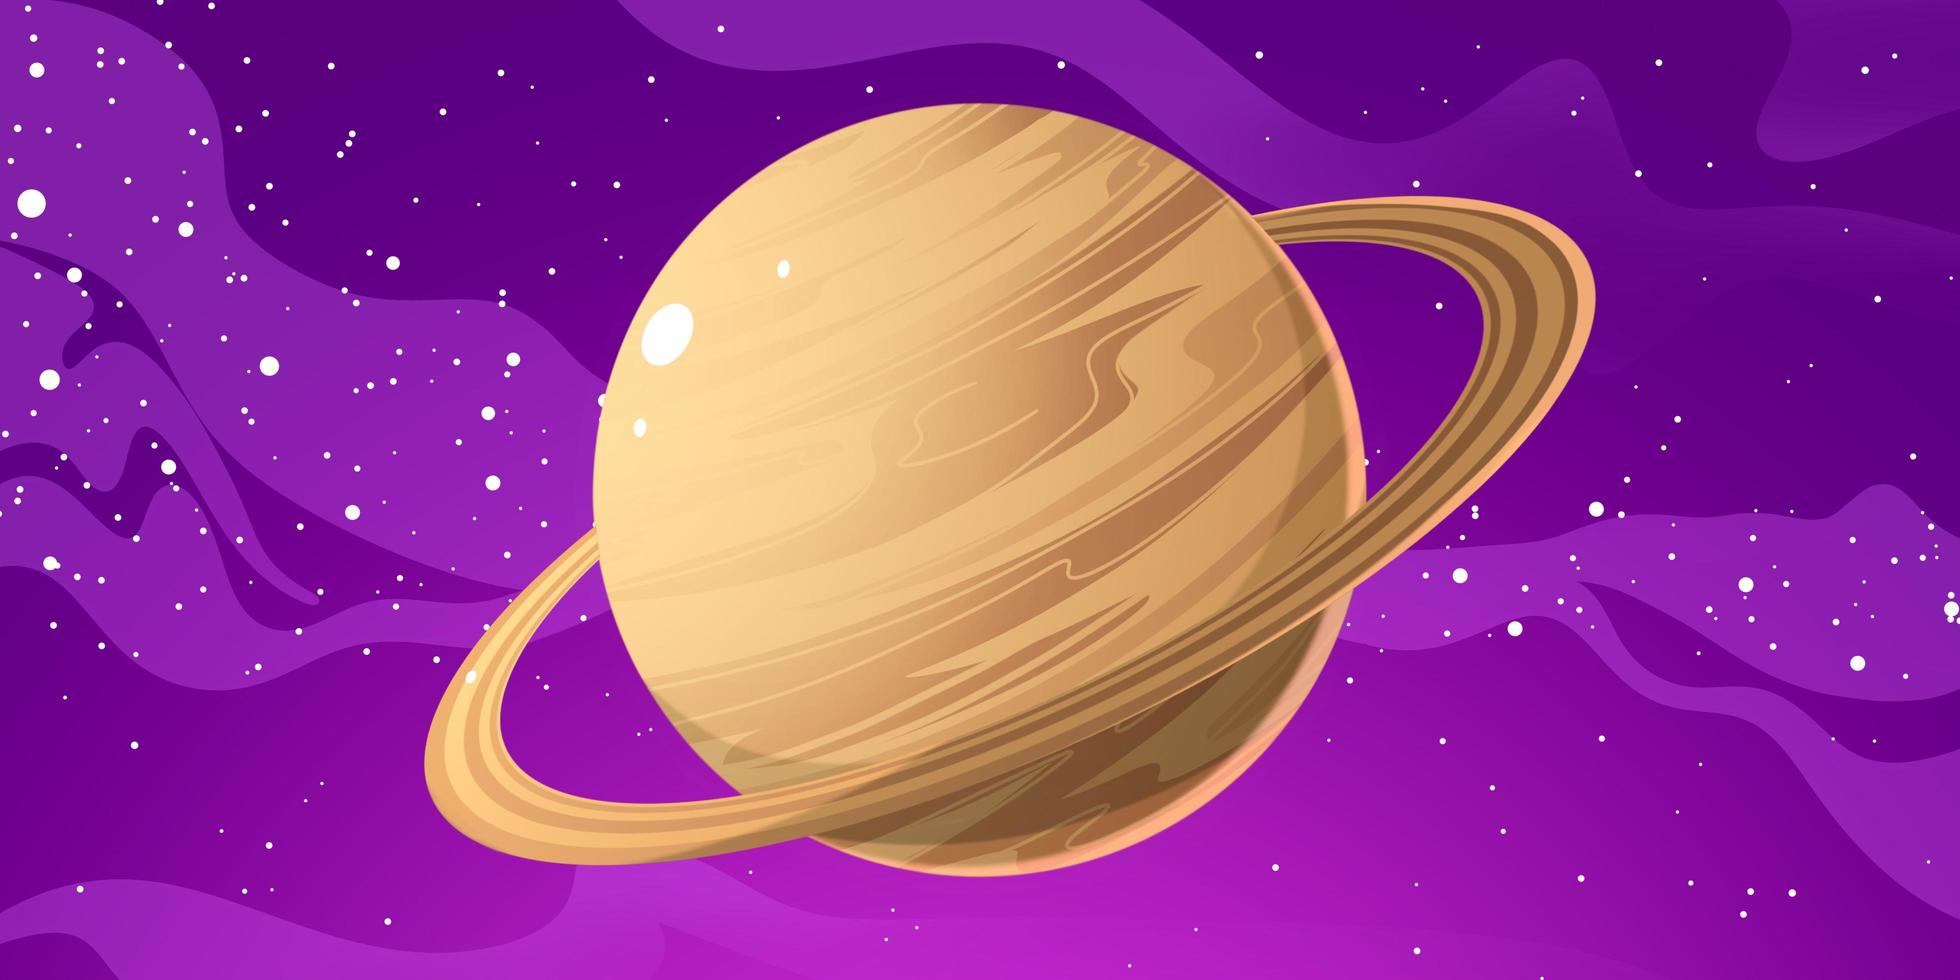 Ilustración del planeta Saturno. Saturno es el segundo planeta más grande después de Júpiter en el sistema solar. saturno tiene un anillo magnifico asi que saturno se ve tan hermoso foto